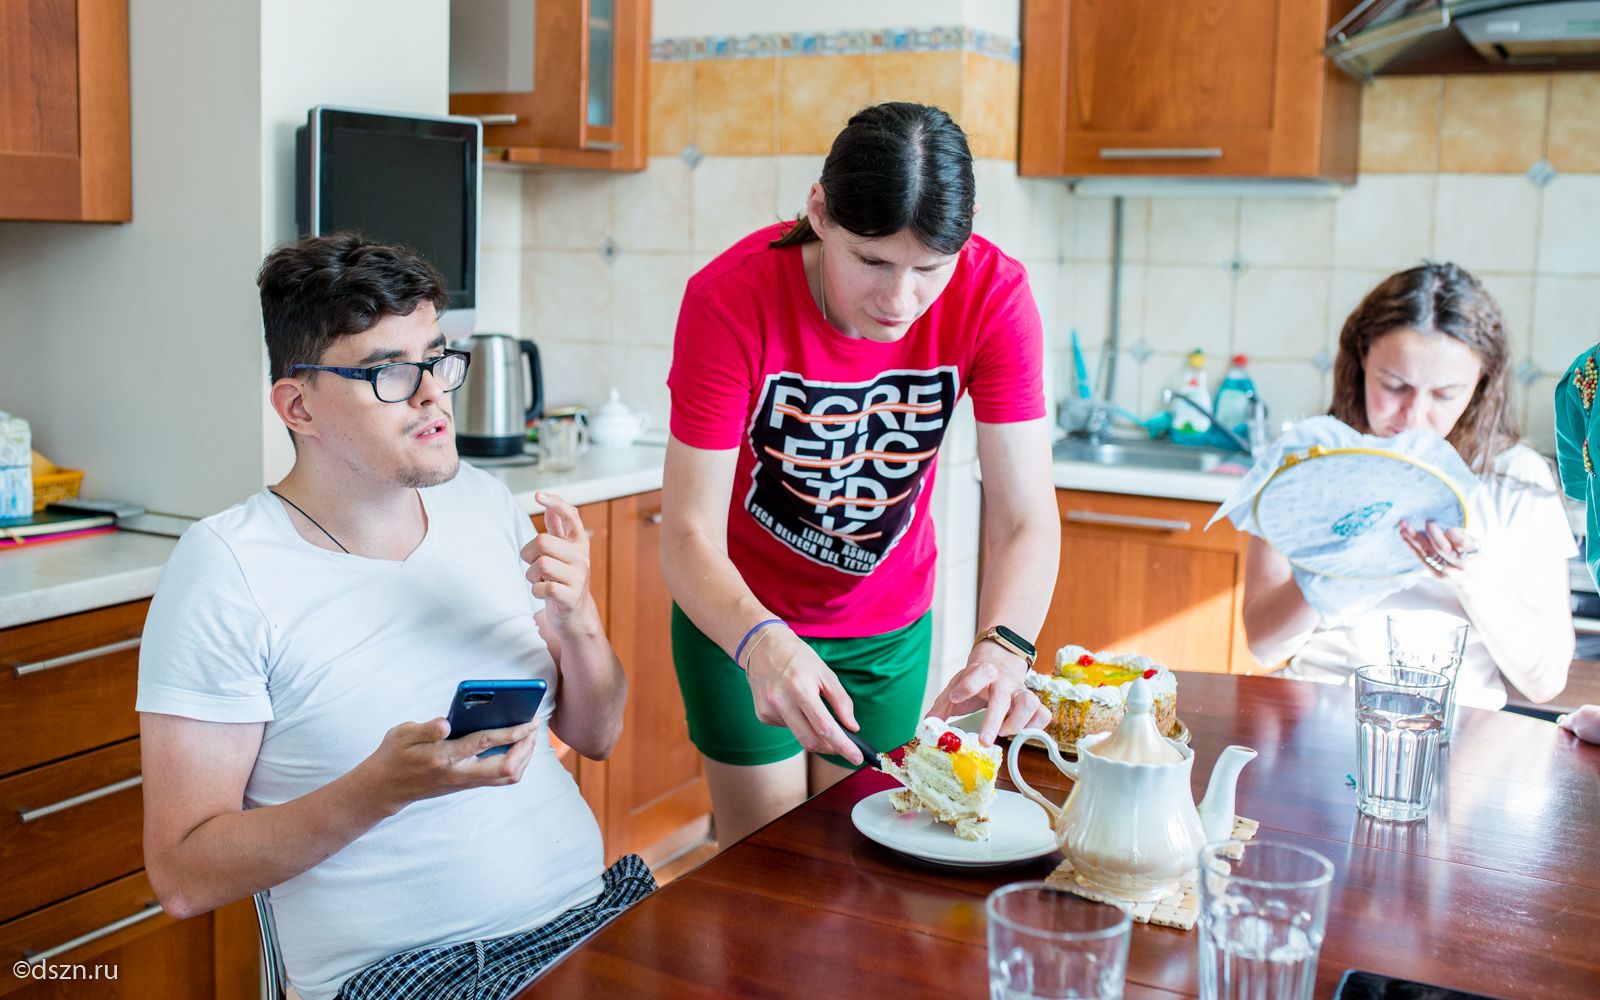 Нина Торгашева угощает тортом своего соседа Сергея Трунова